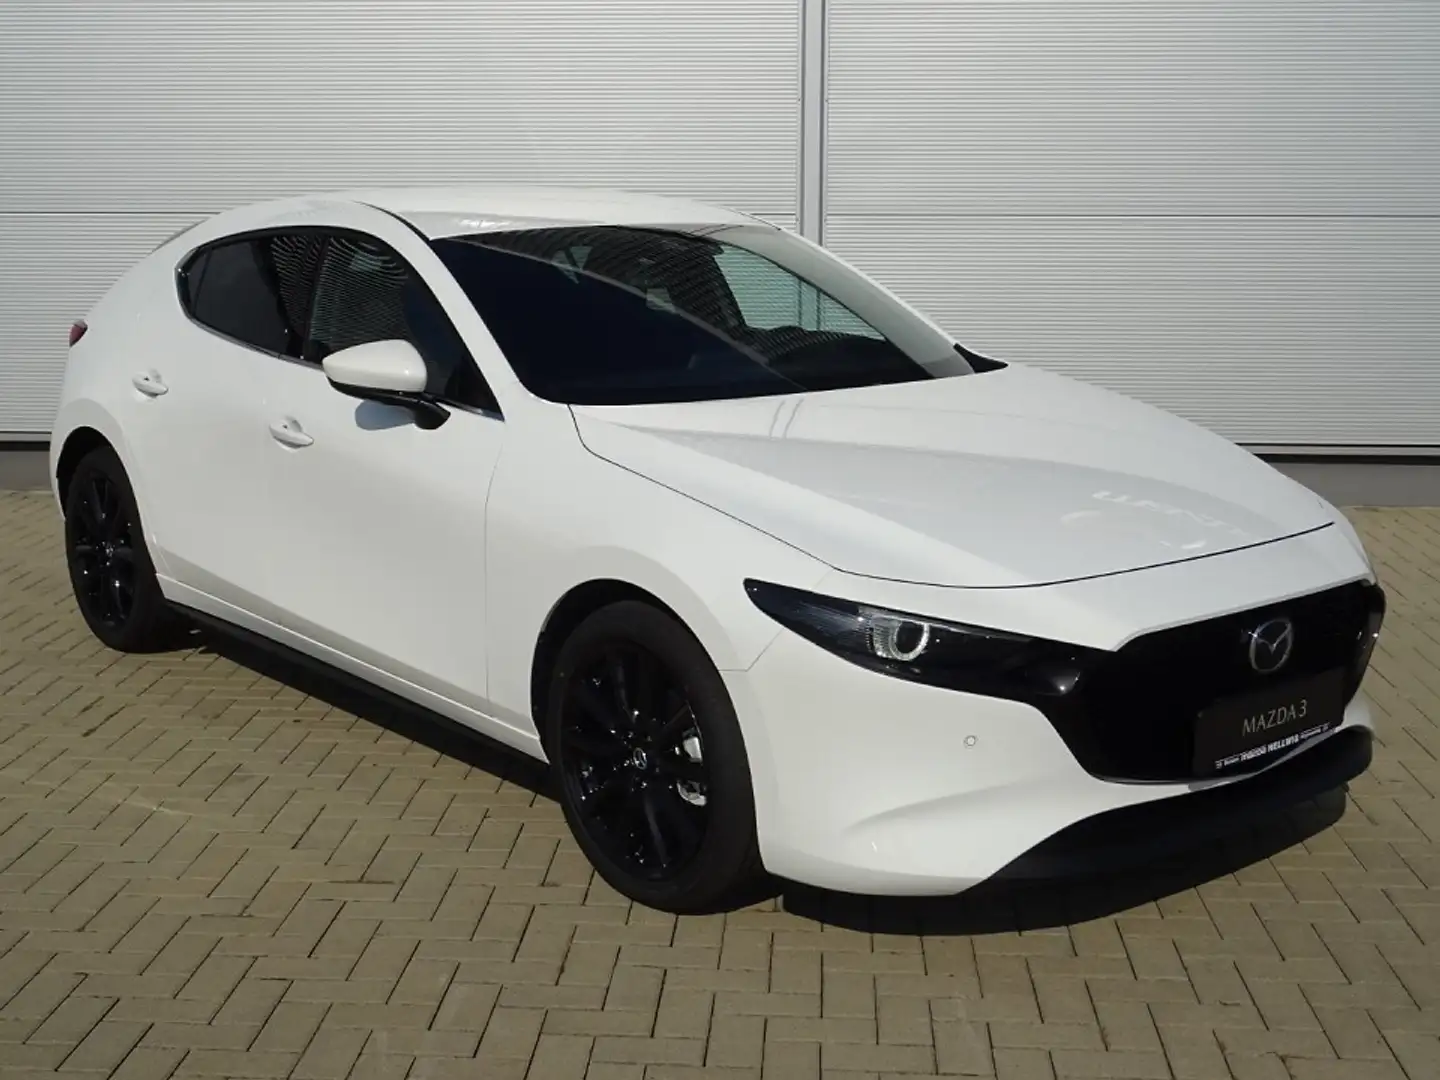 Mazda 3 Limousine in Weiß neu in Hoyerswerda für € 27.880,-